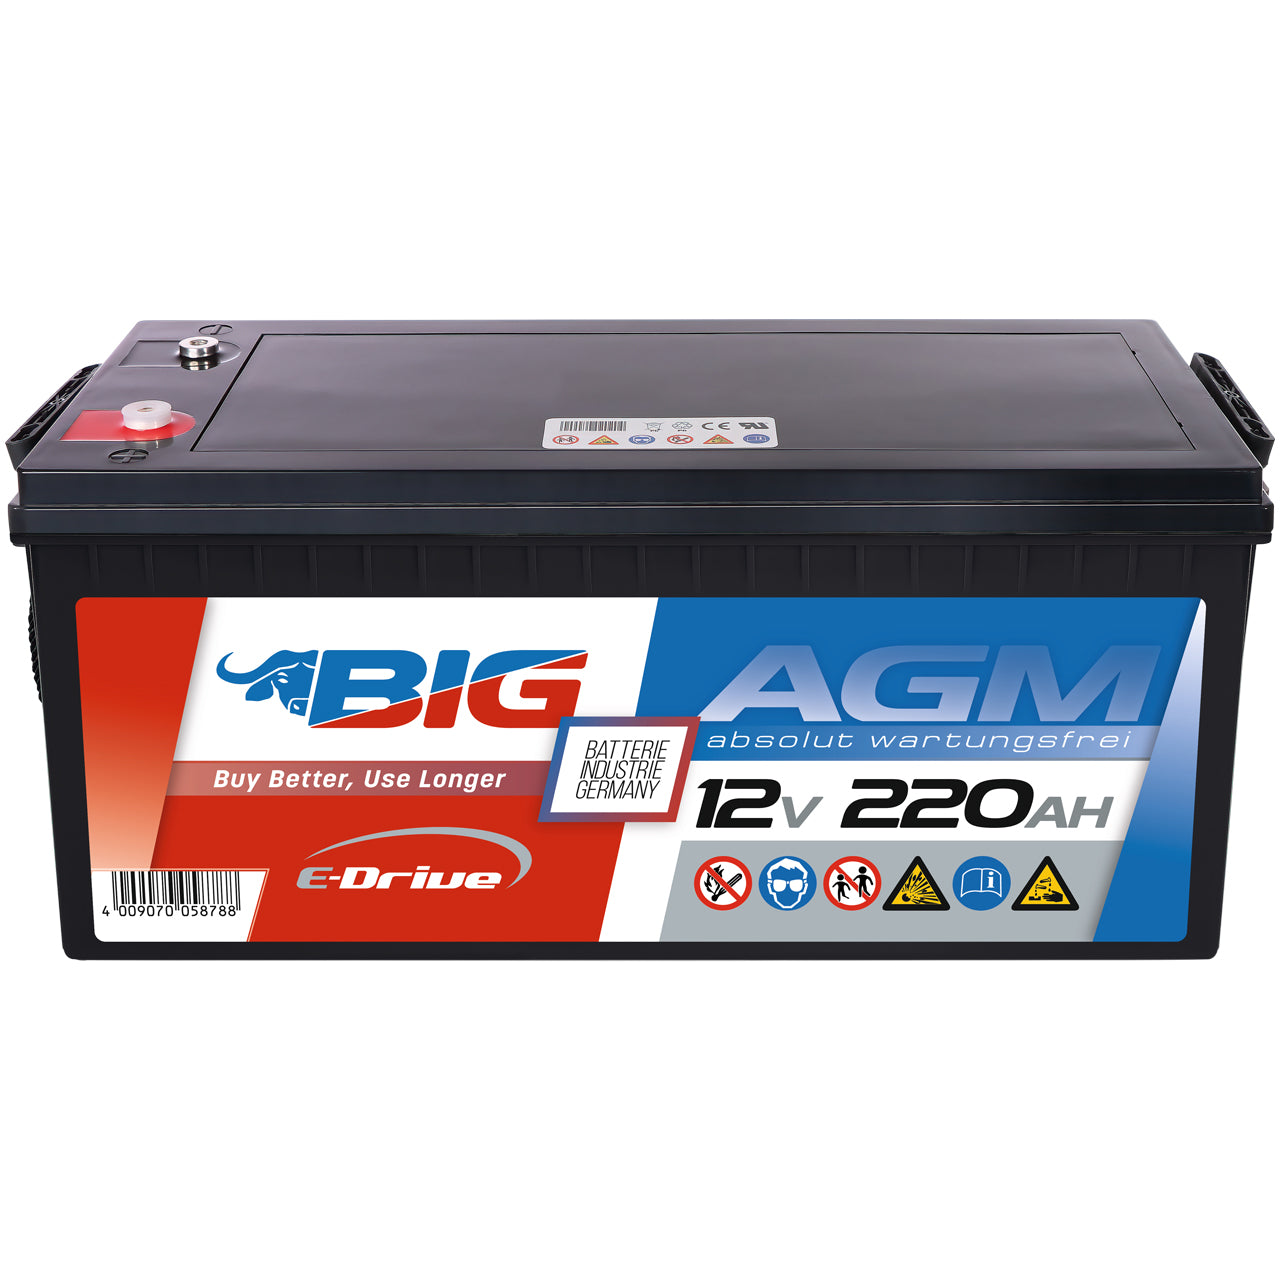 BIG E-Drive AGM 12V 220Ah